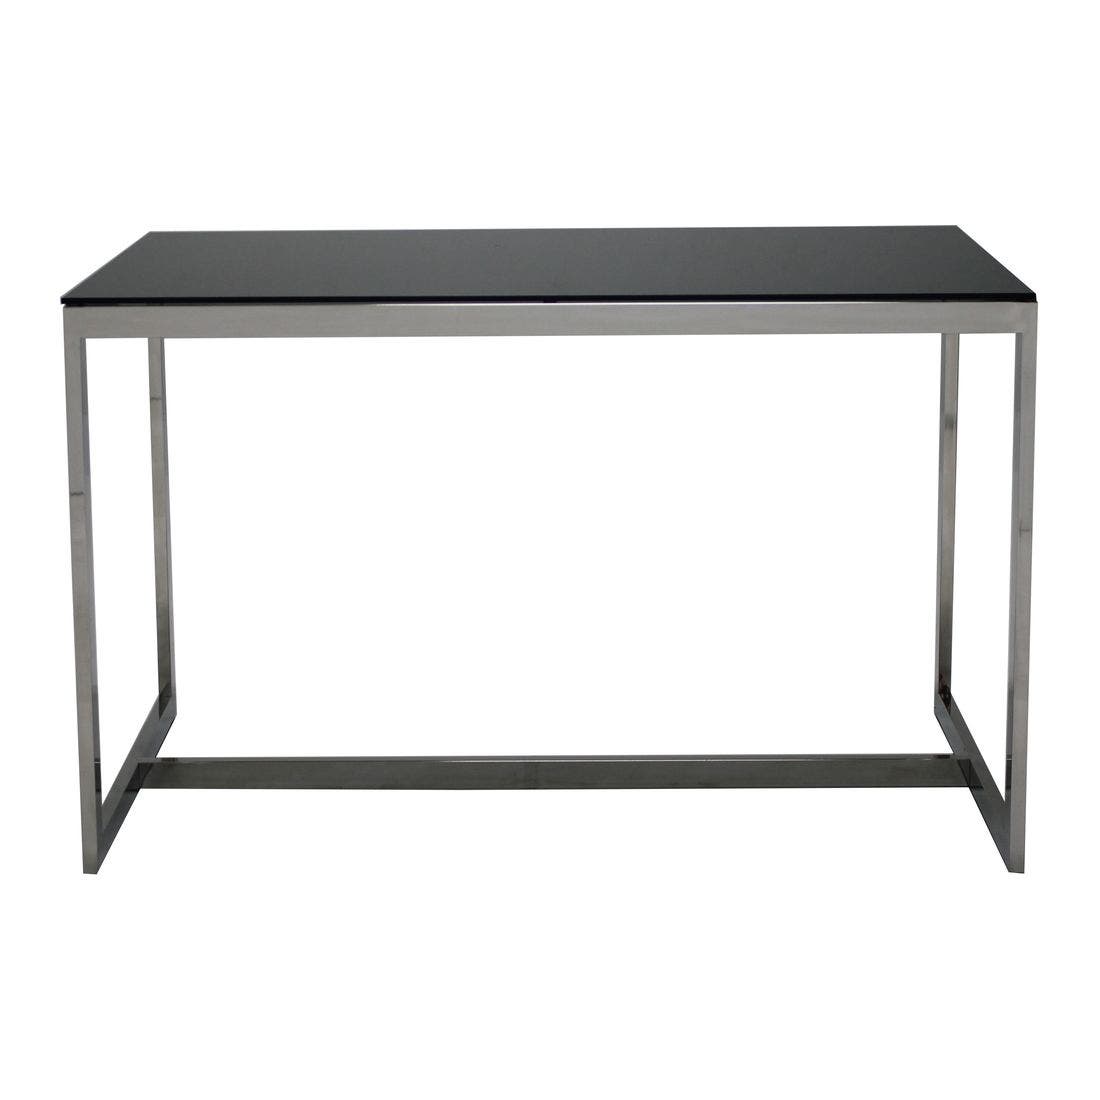 โต๊ะทานอาหาร โต๊ะอาหารขาเหล็กท๊อปกระจก รุ่น Raymond สีสีดำ-SB Design Square